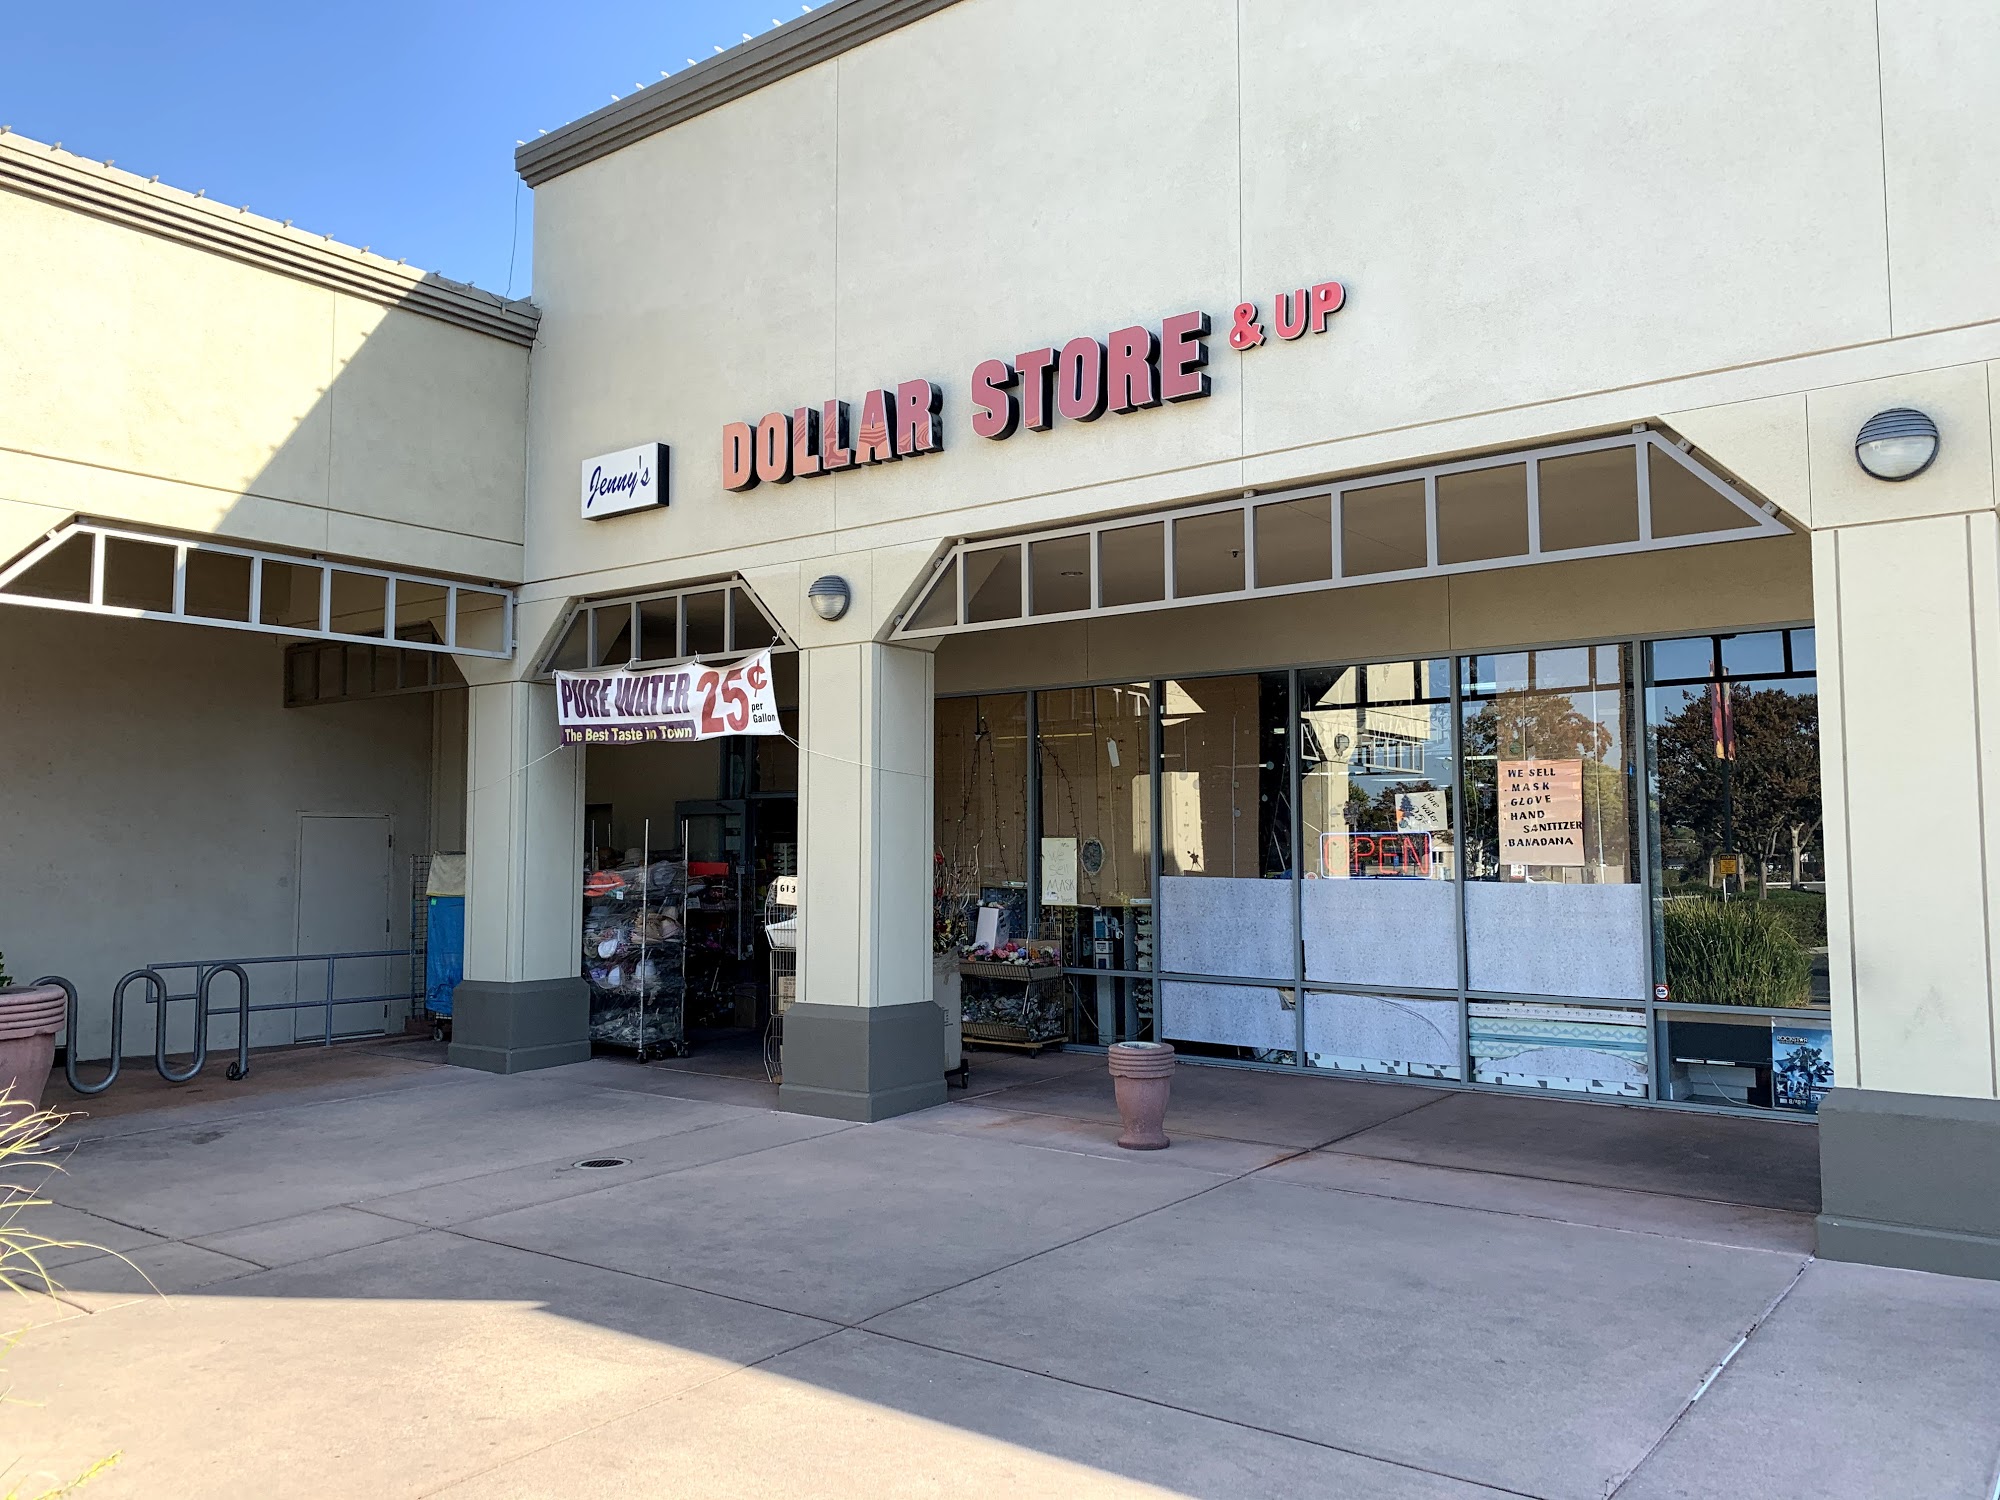 Jenny's Dollar Store